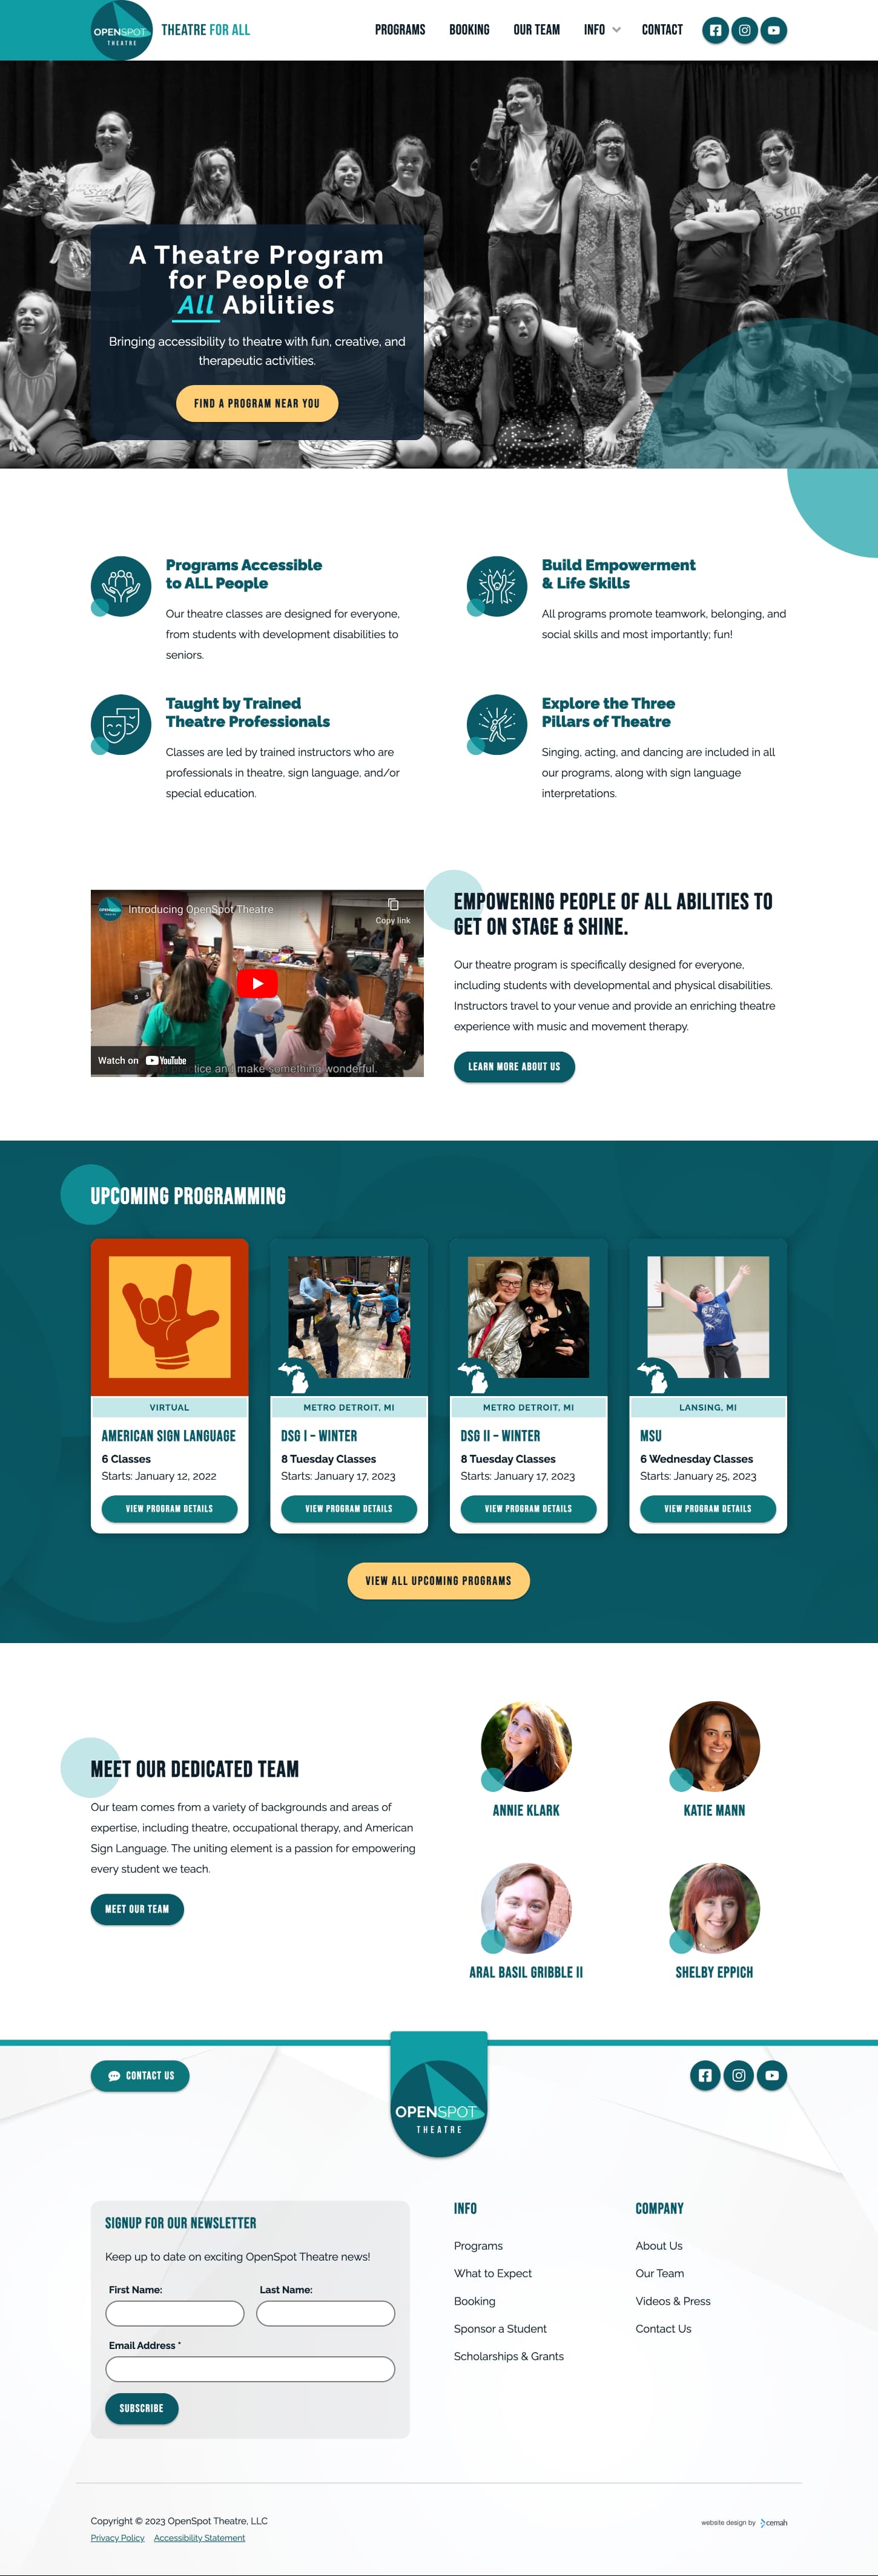 desktop screenshot of Openspot Theatre website homepage